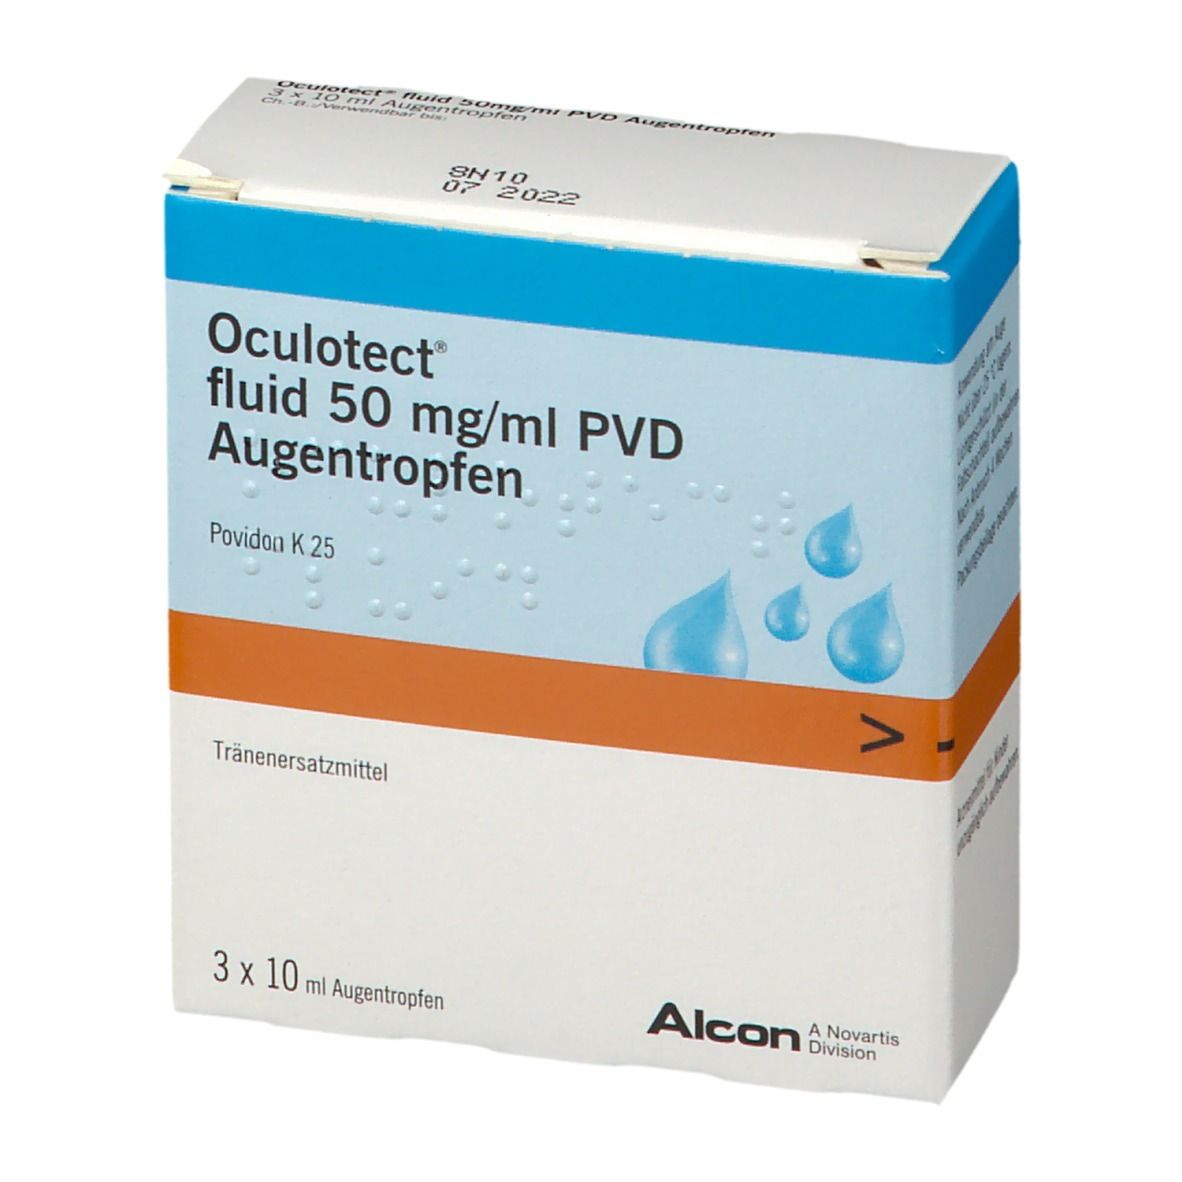 Oculotect® fluid PVD